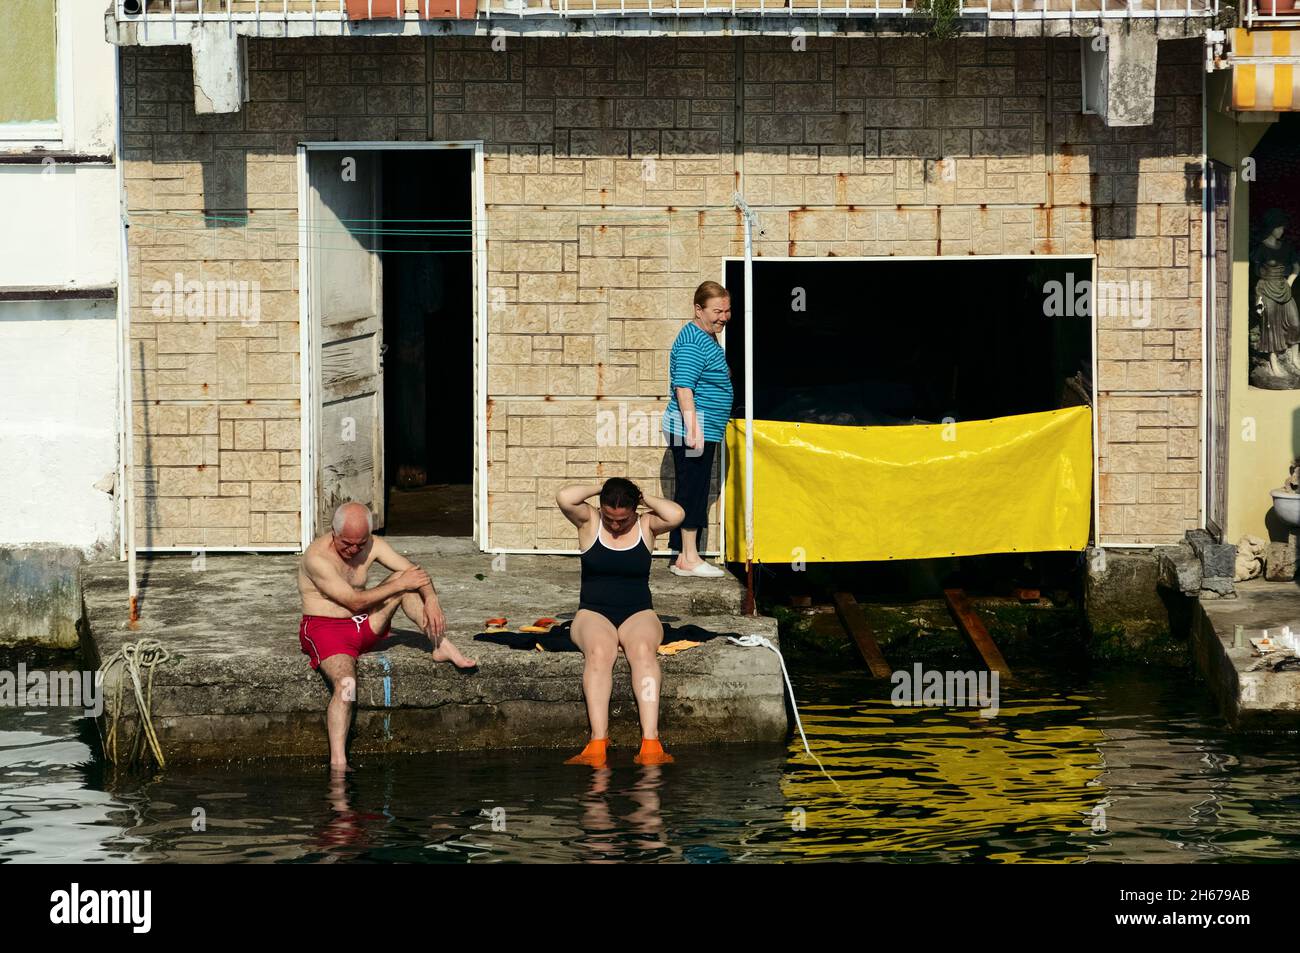 Escena callejera de verano de gente tomando el sol en un pueblo pesquero a orillas del Estrecho del Bósforo, Turquía Foto de stock